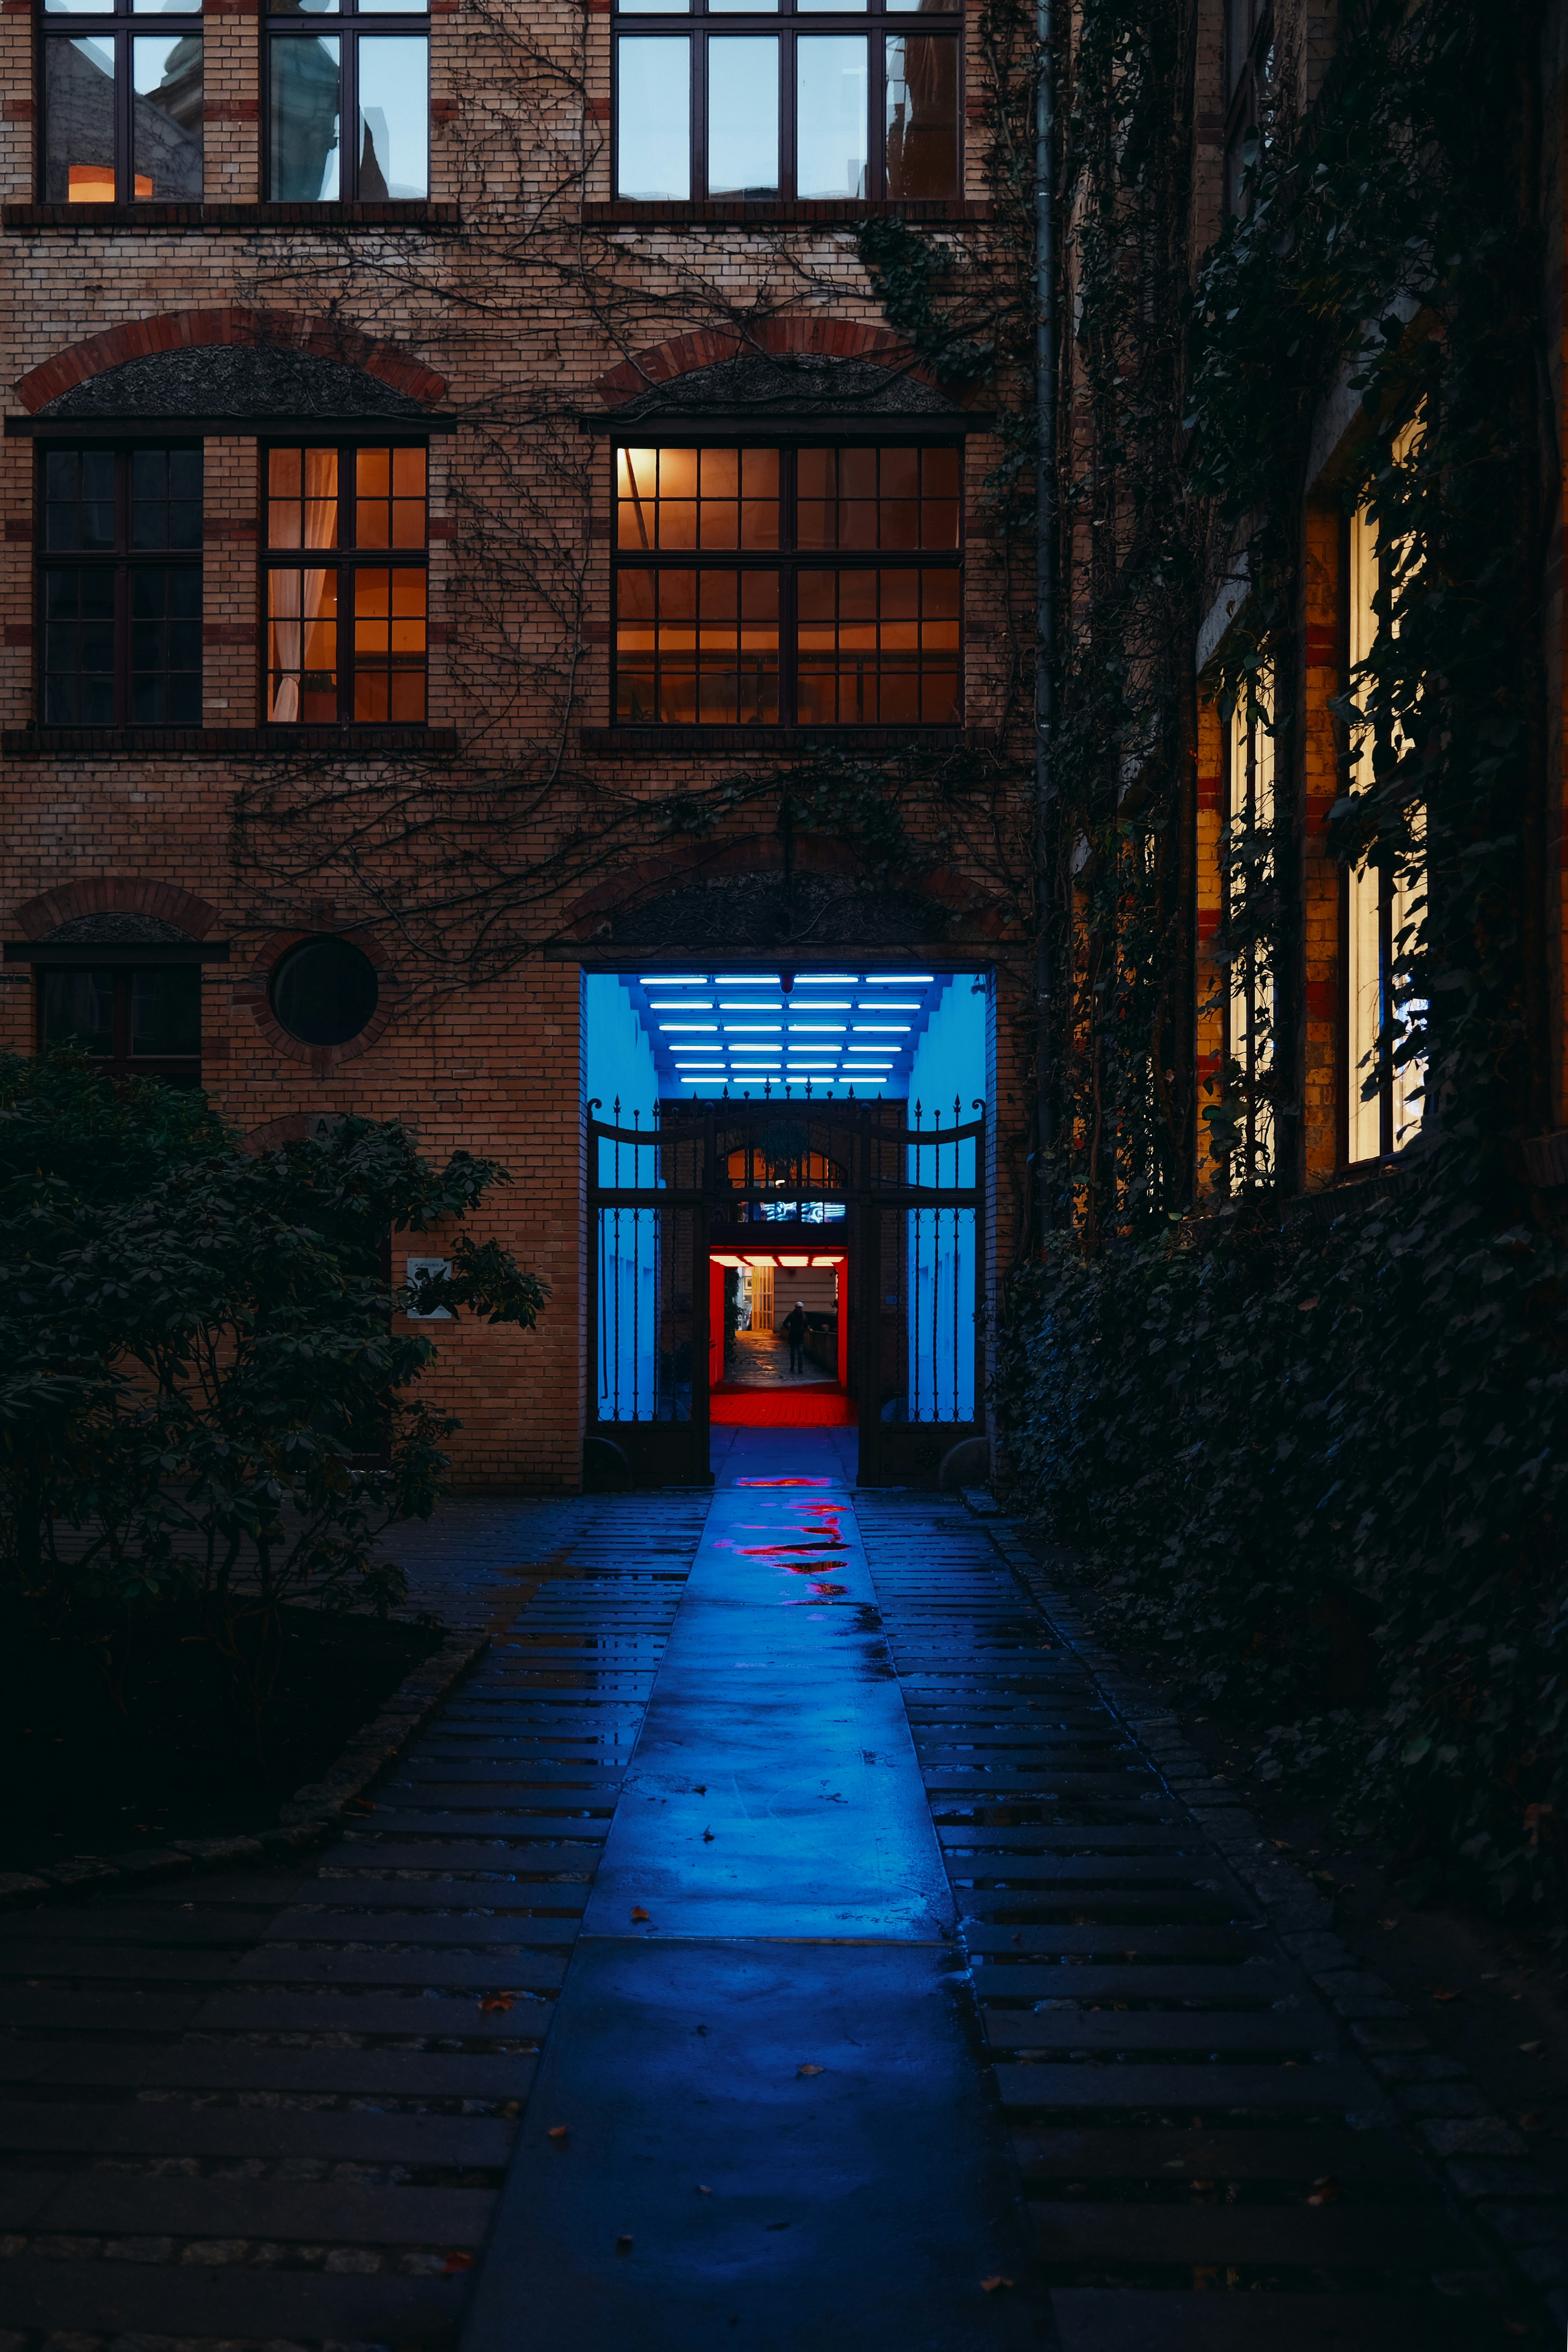 brown brick building with blue door